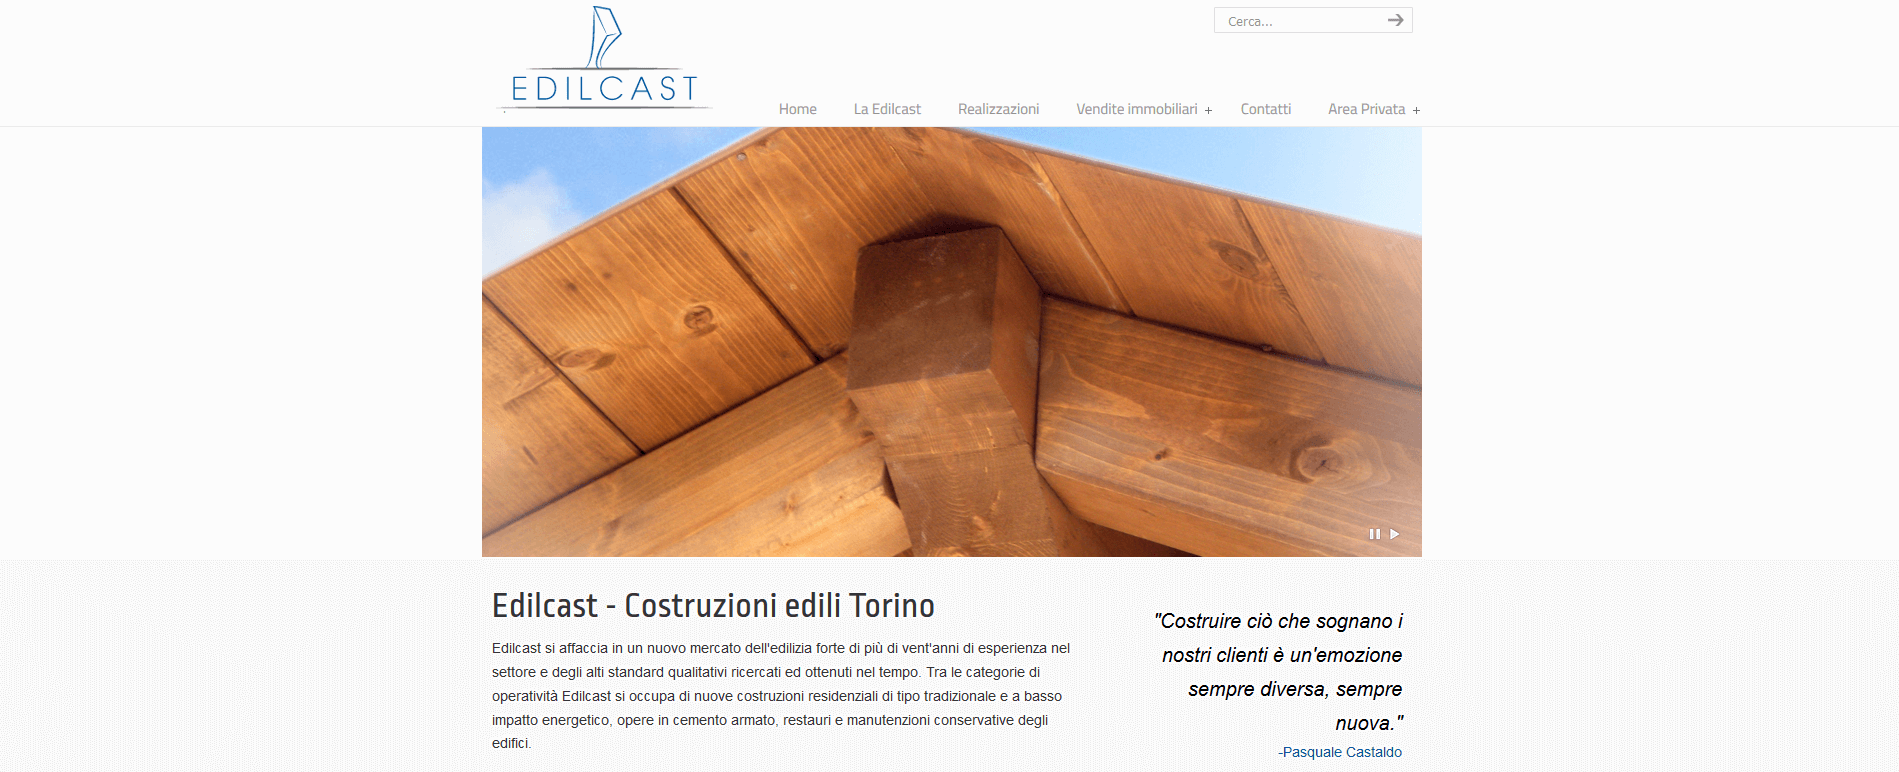 Edilcast – Costruzioni Edili Torino